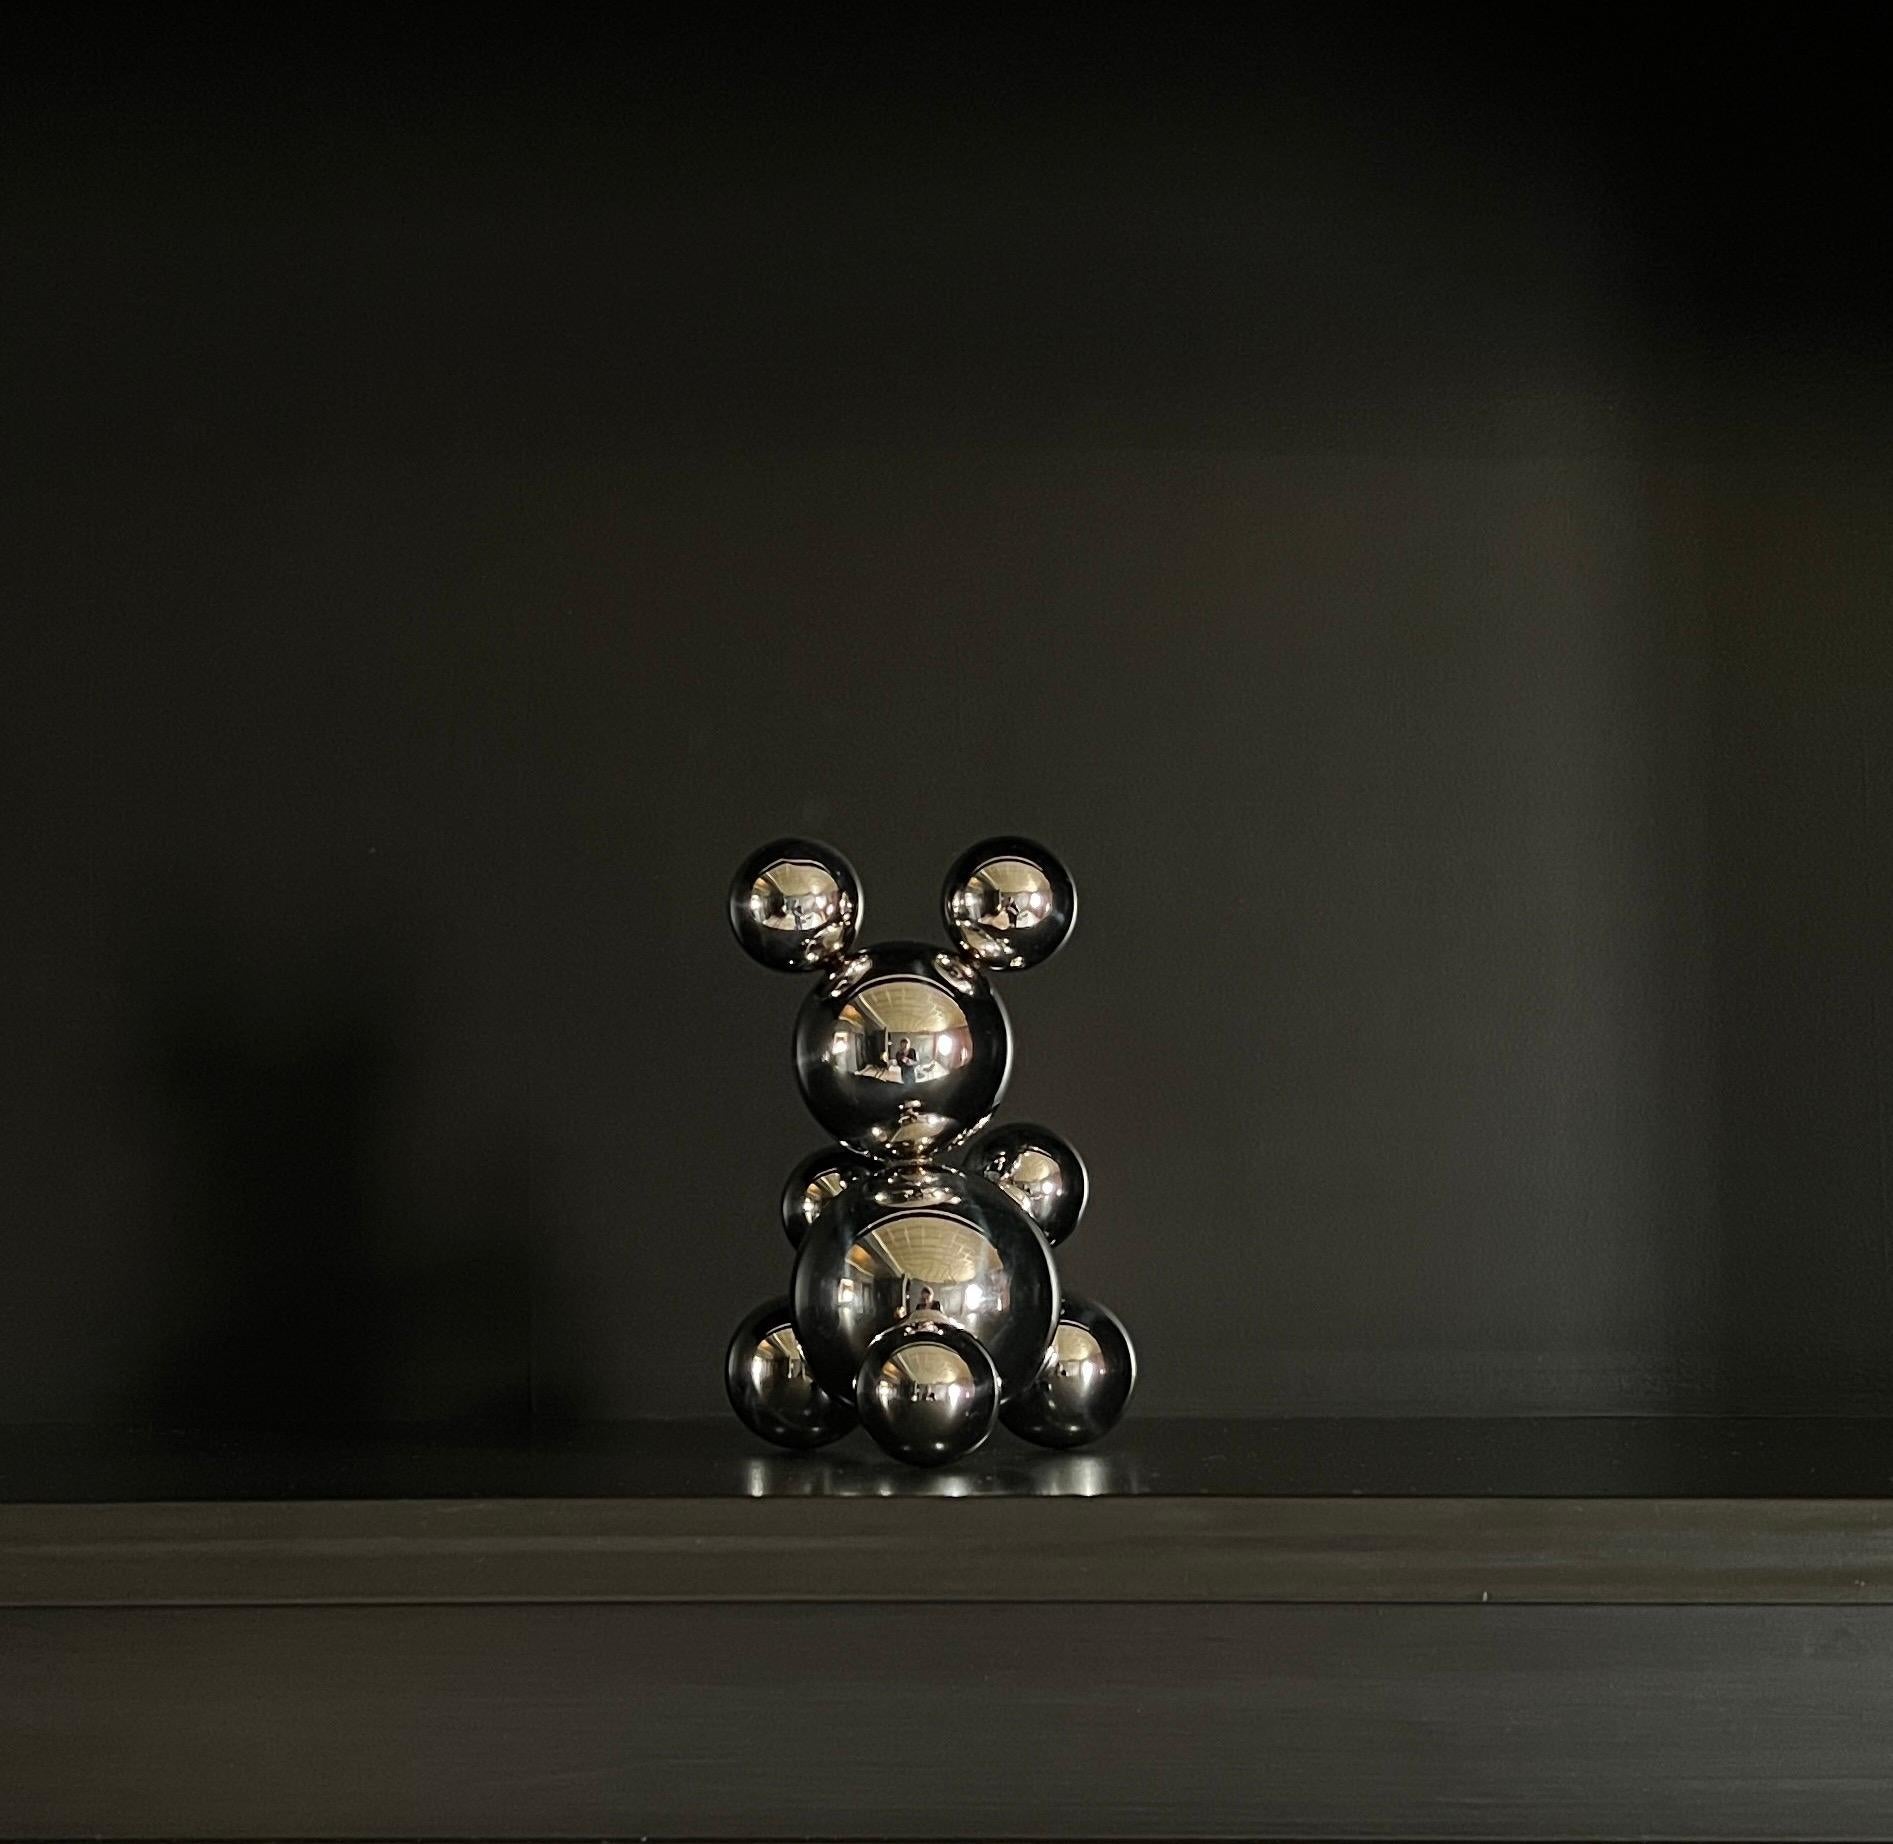 Tiny Stainless Steel Bear 'Irena' Sculpture Minimalistic Animal 4